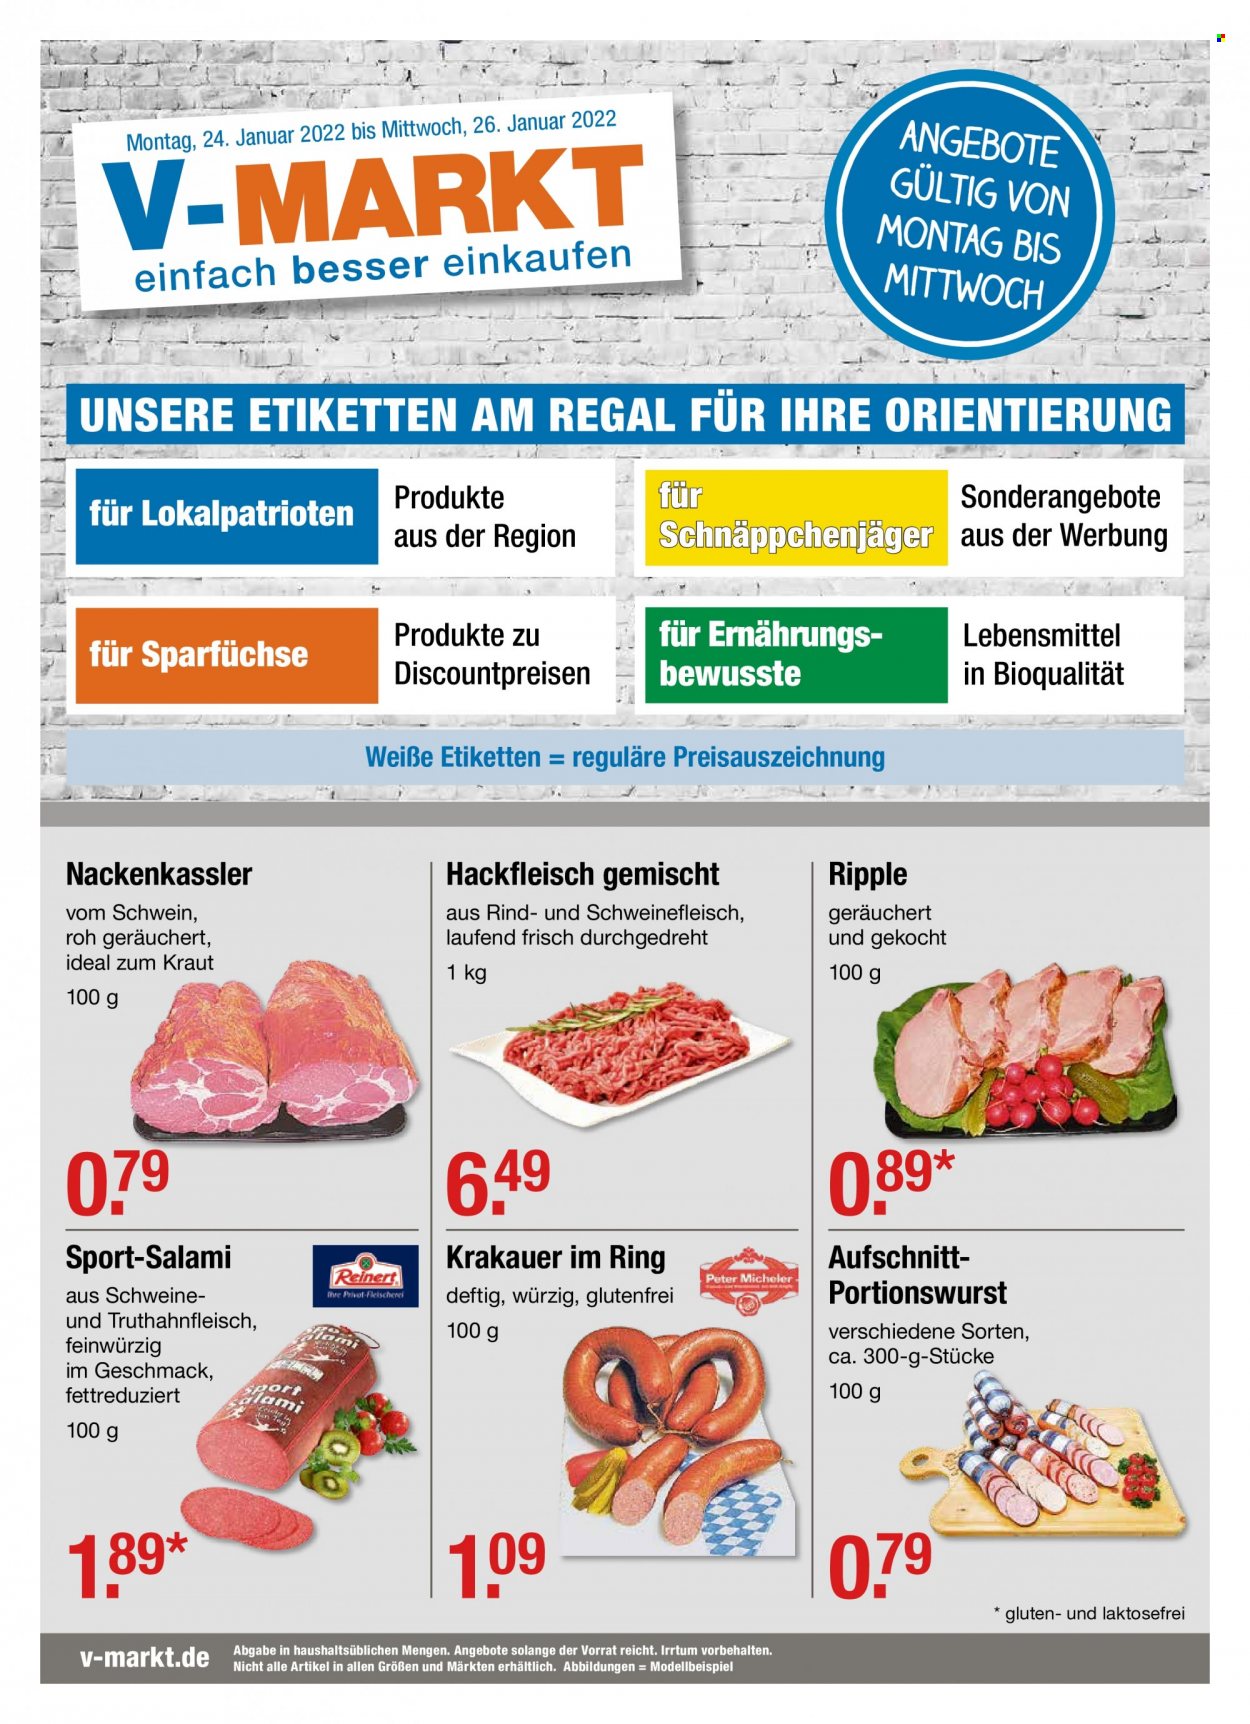 thumbnail - Prospekte V-Markt - 24.01.2022 - 26.01.2022 - Produkte in Aktion - Kraut, Rindfleisch, Hackfleisch, Schweinehackfleisch, Salami, Krakauer, Regal. Seite 1.